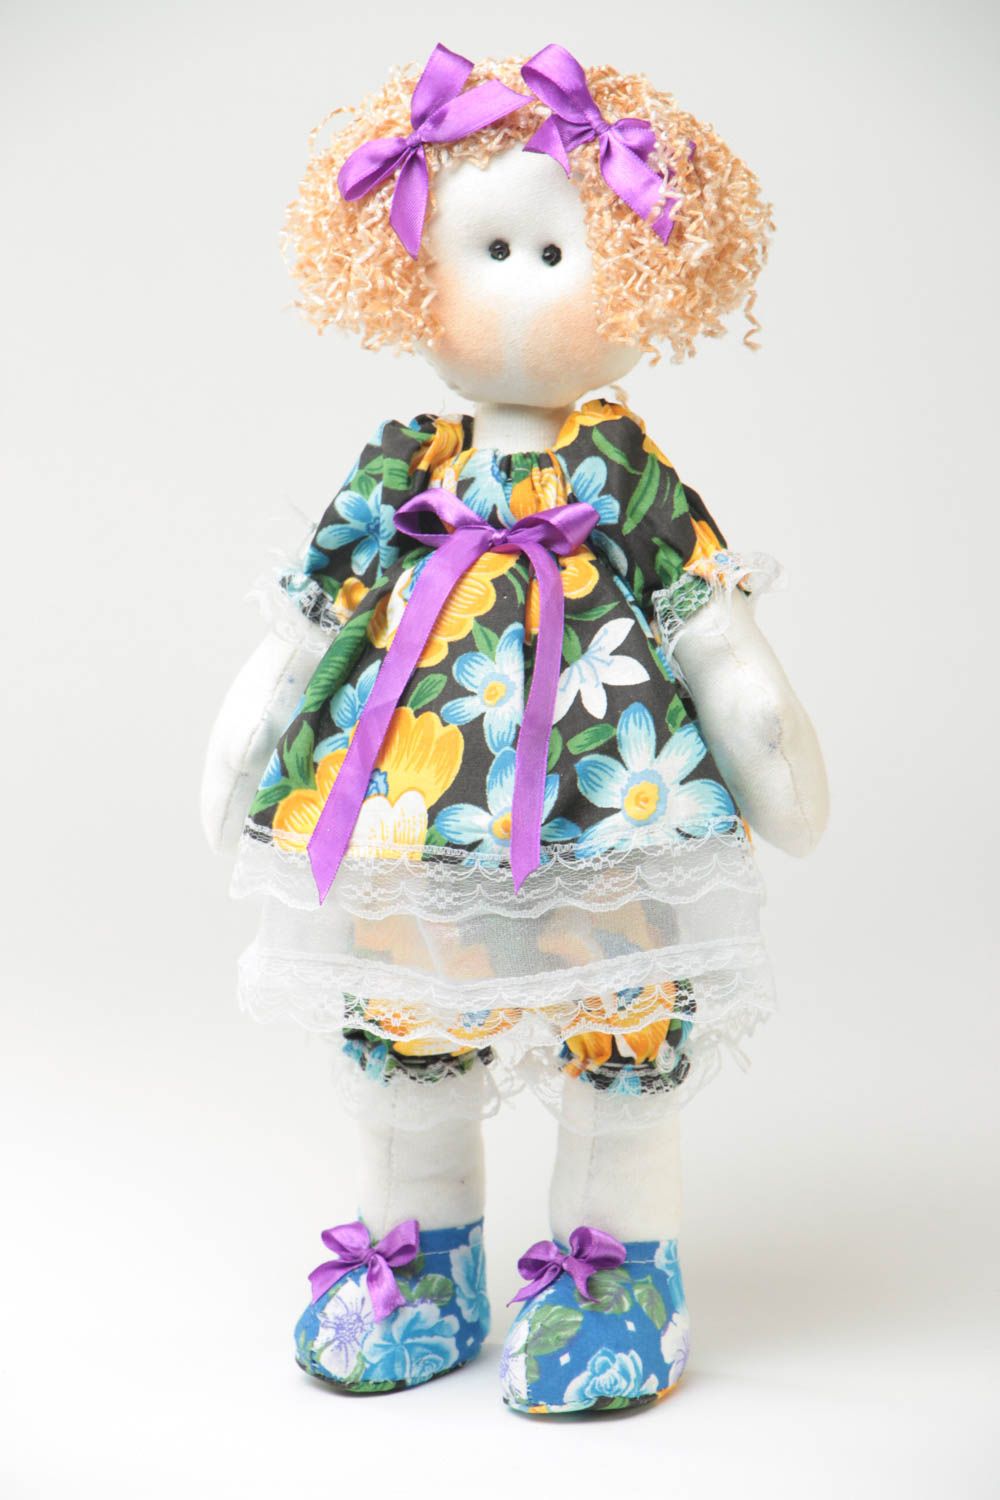 Игрушка кукла из ткани девочка в платьице милая большая красивая ручной работы фото 2